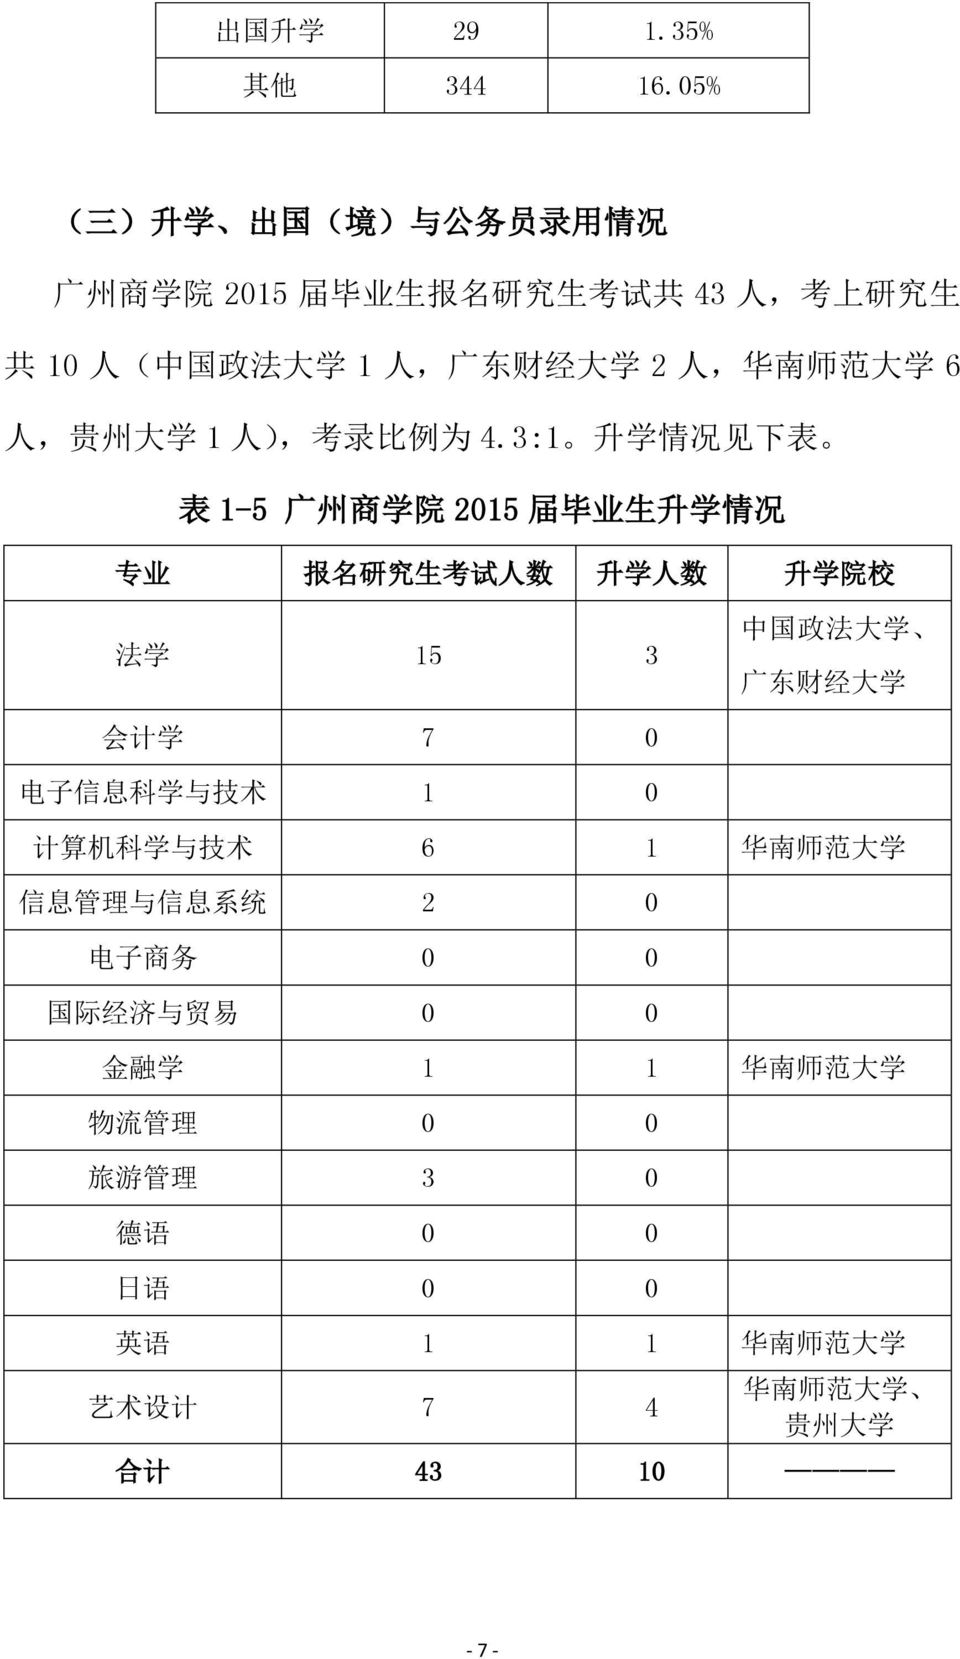 范 大 学 6 人, 贵 州 大 学 1 人 ), 考 录 比 例 为 4.